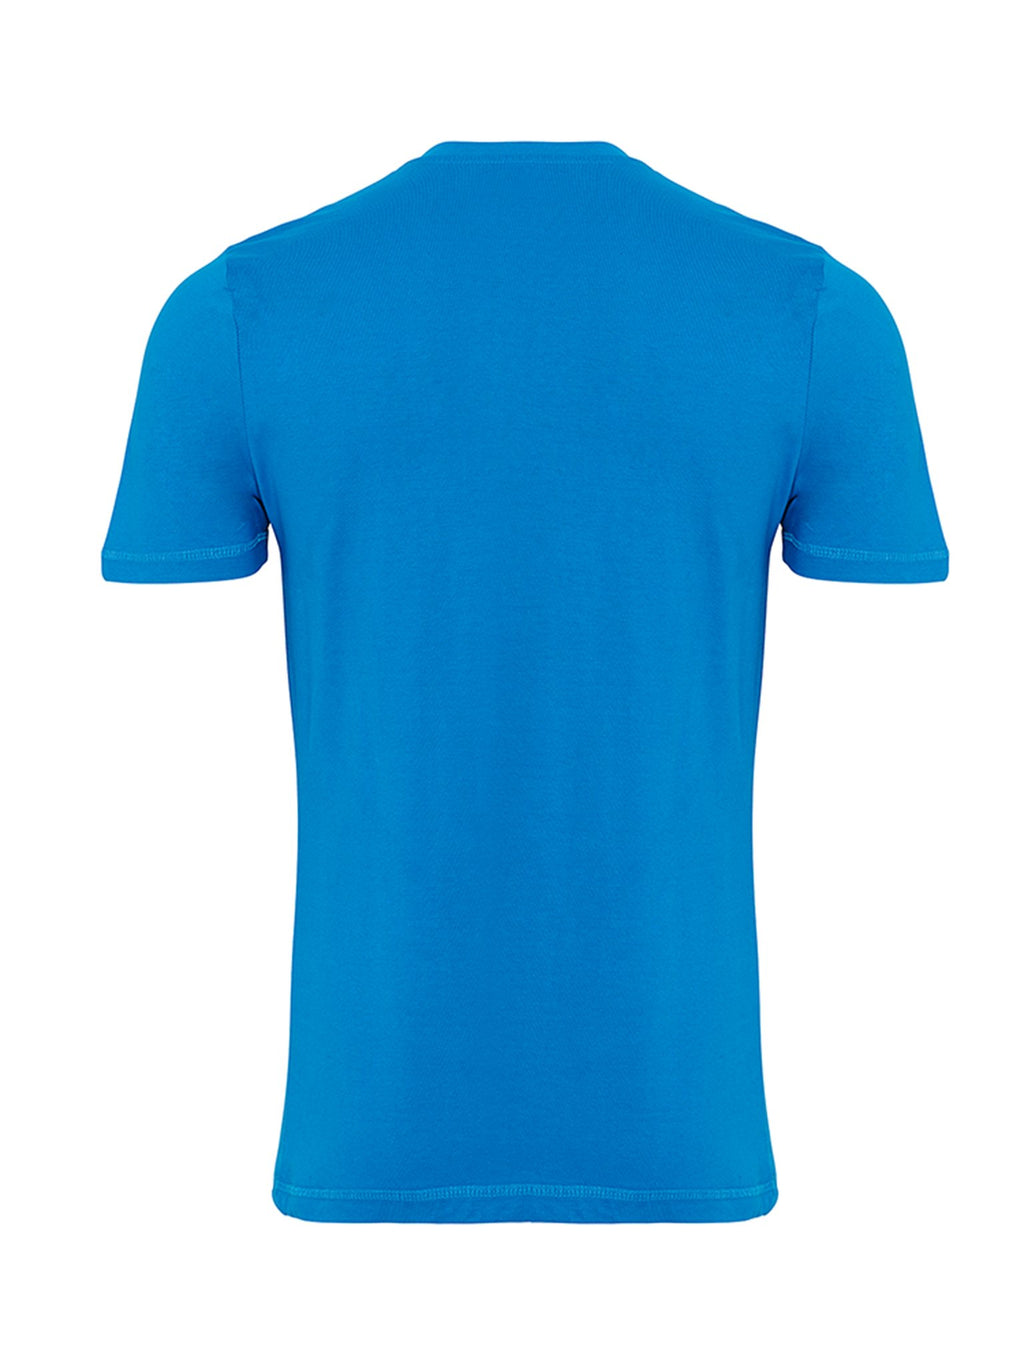 T -shirt di base organica - blu turchese